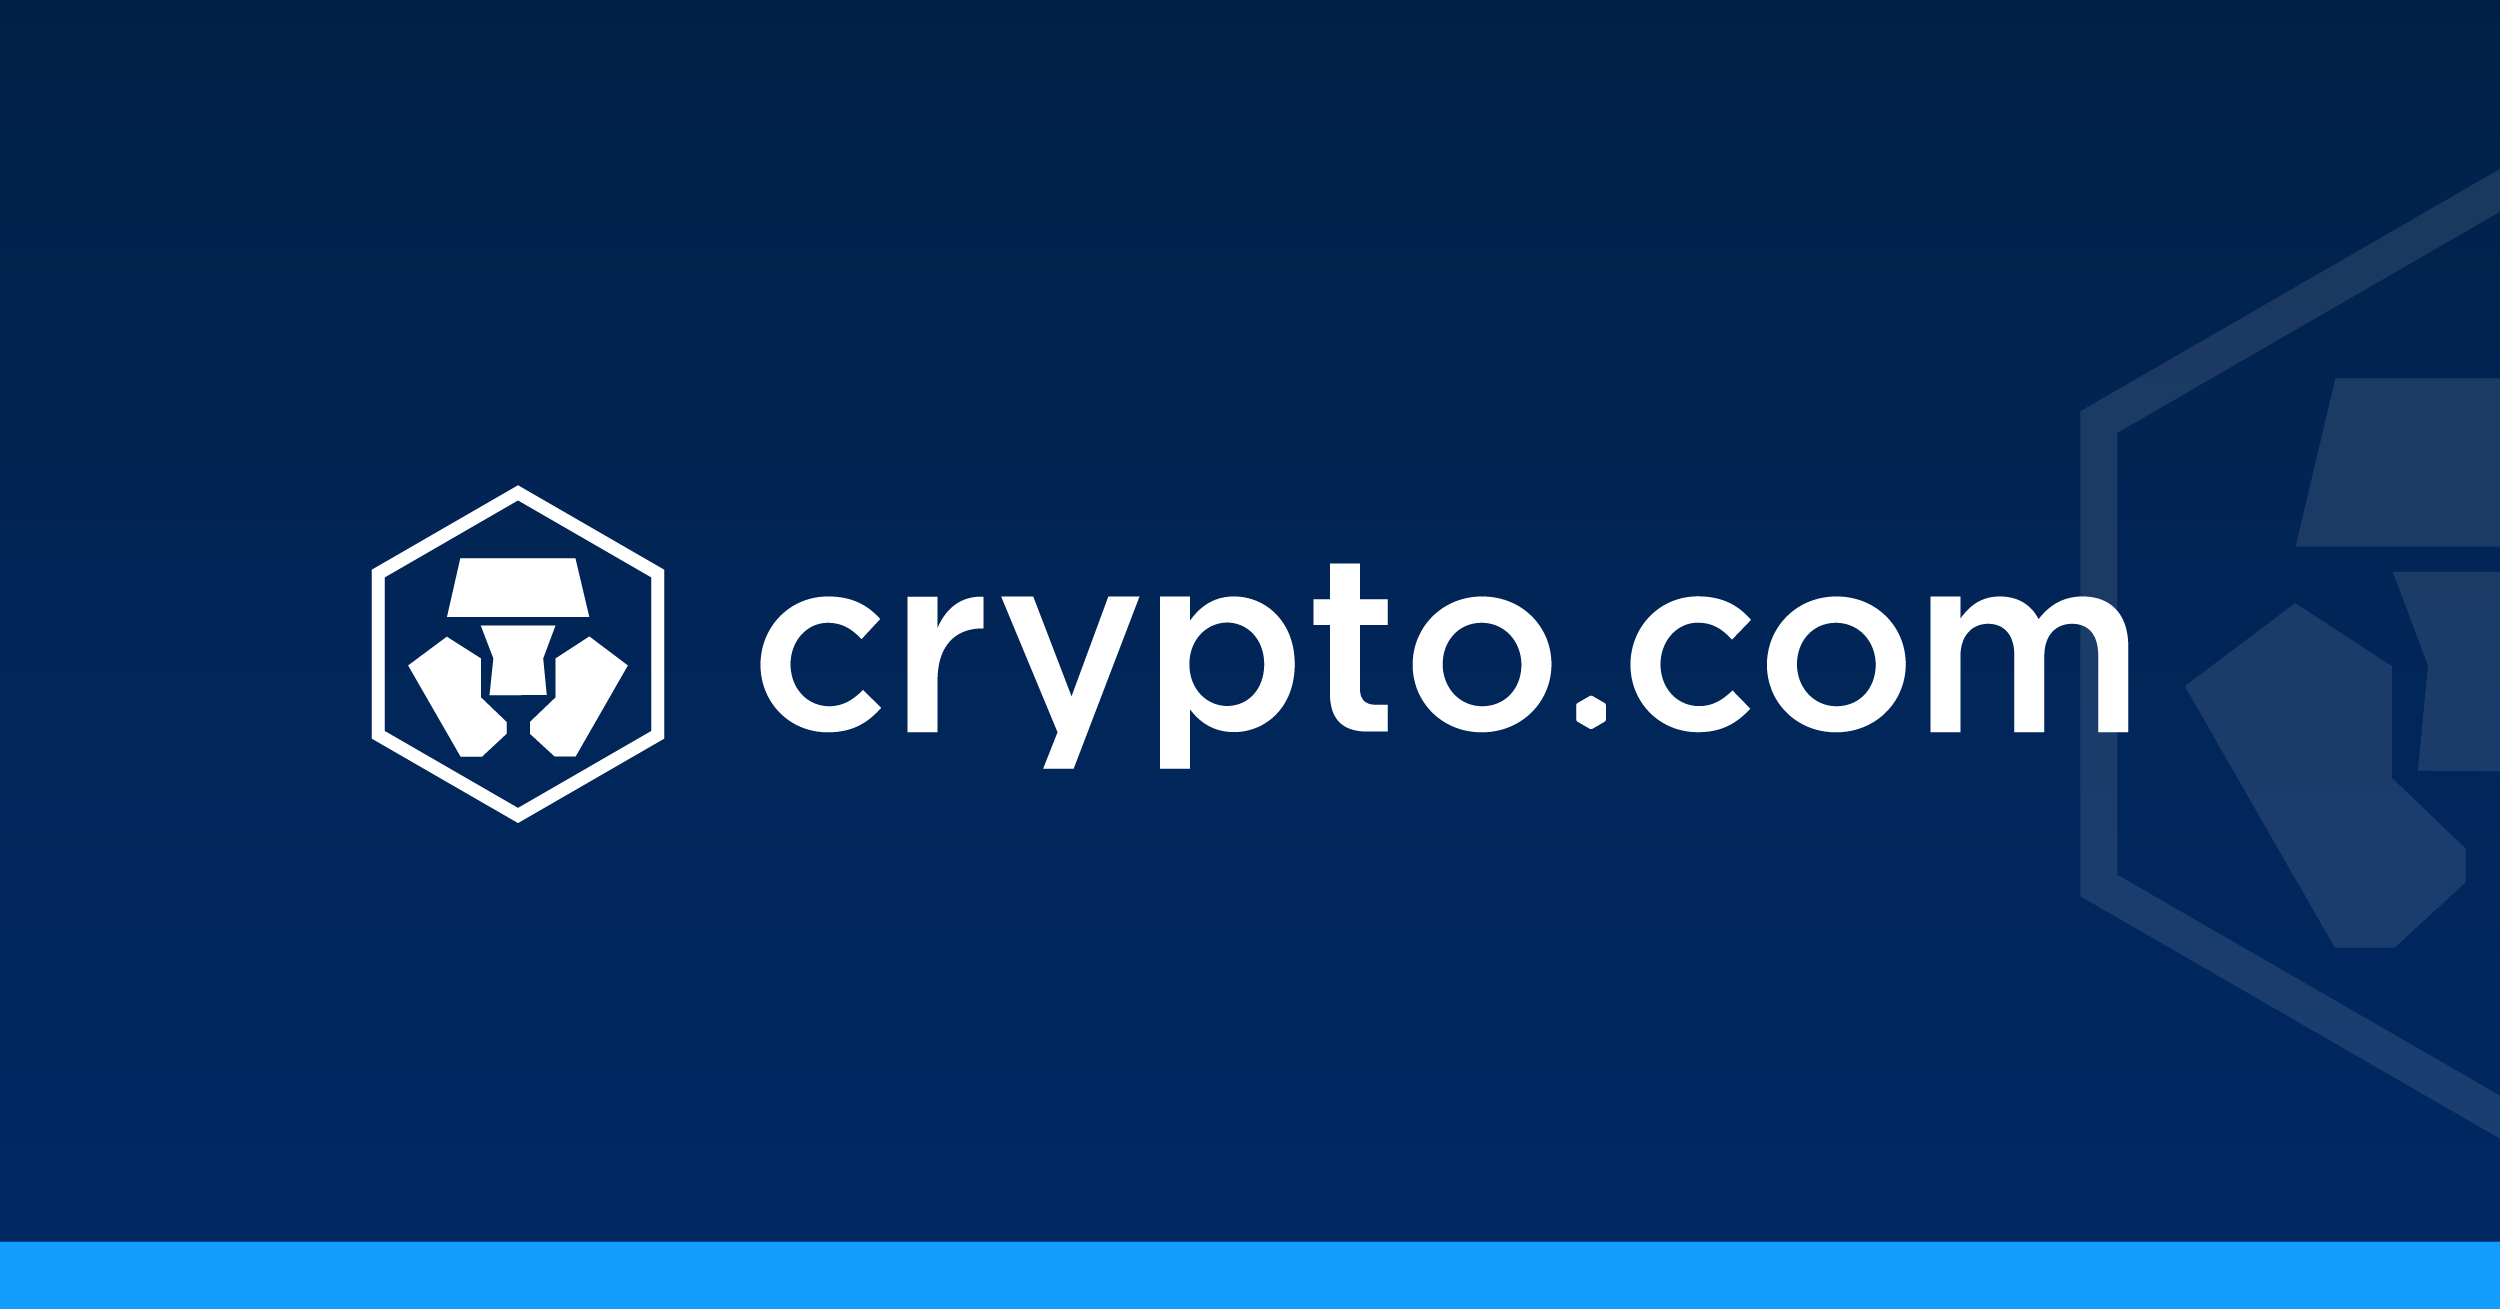 Jak funguje Crypto.com? Recenze projektu a další info ...